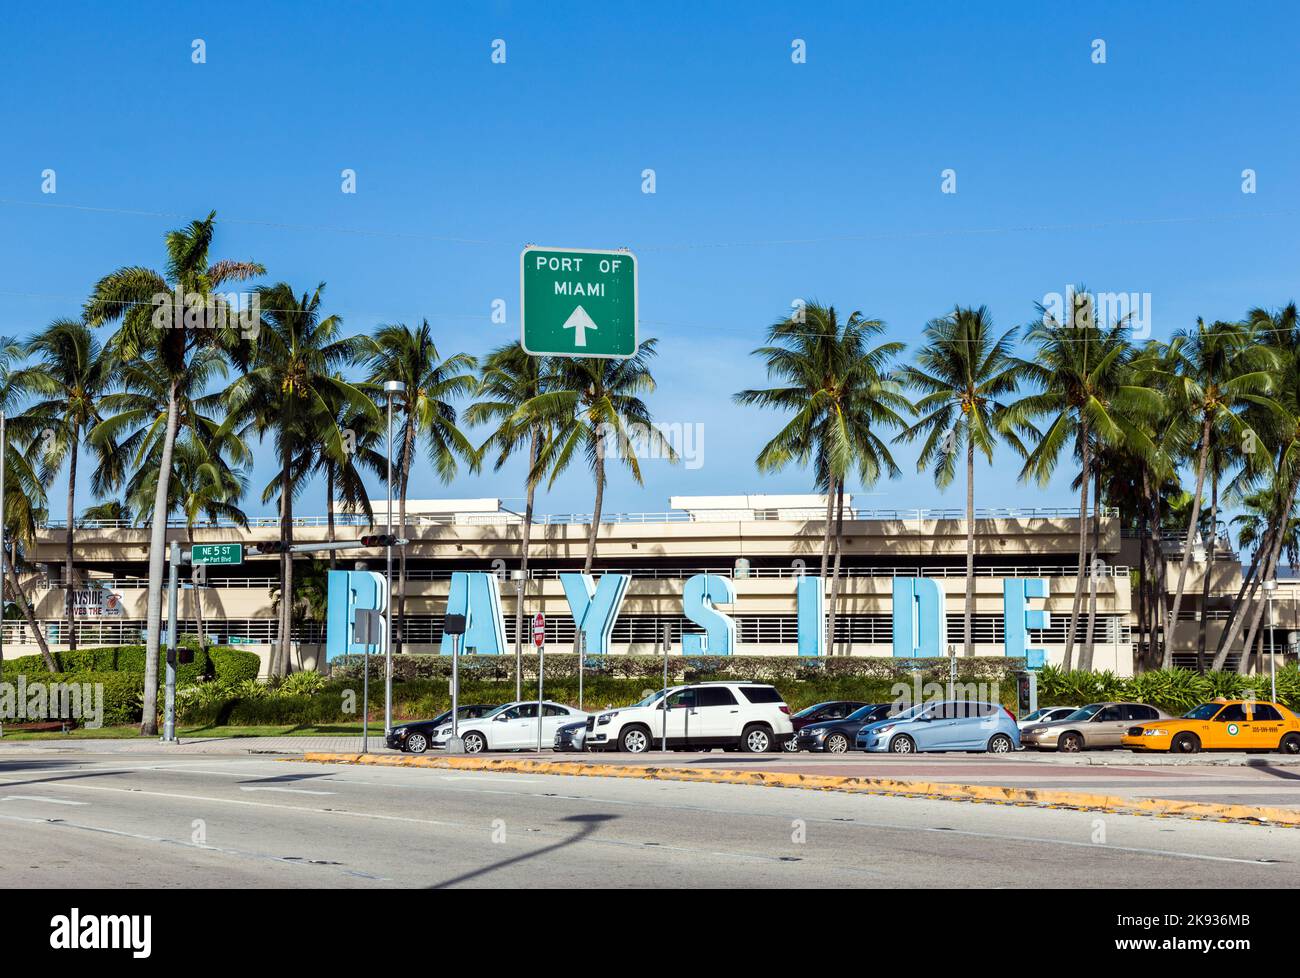 MIAMI, USA 19 AGOSTO 2014: Bayside Marketplace a Miami, USA. E' un mercato di festival e il principale complesso di intrattenimento nel centro di Miami Foto Stock